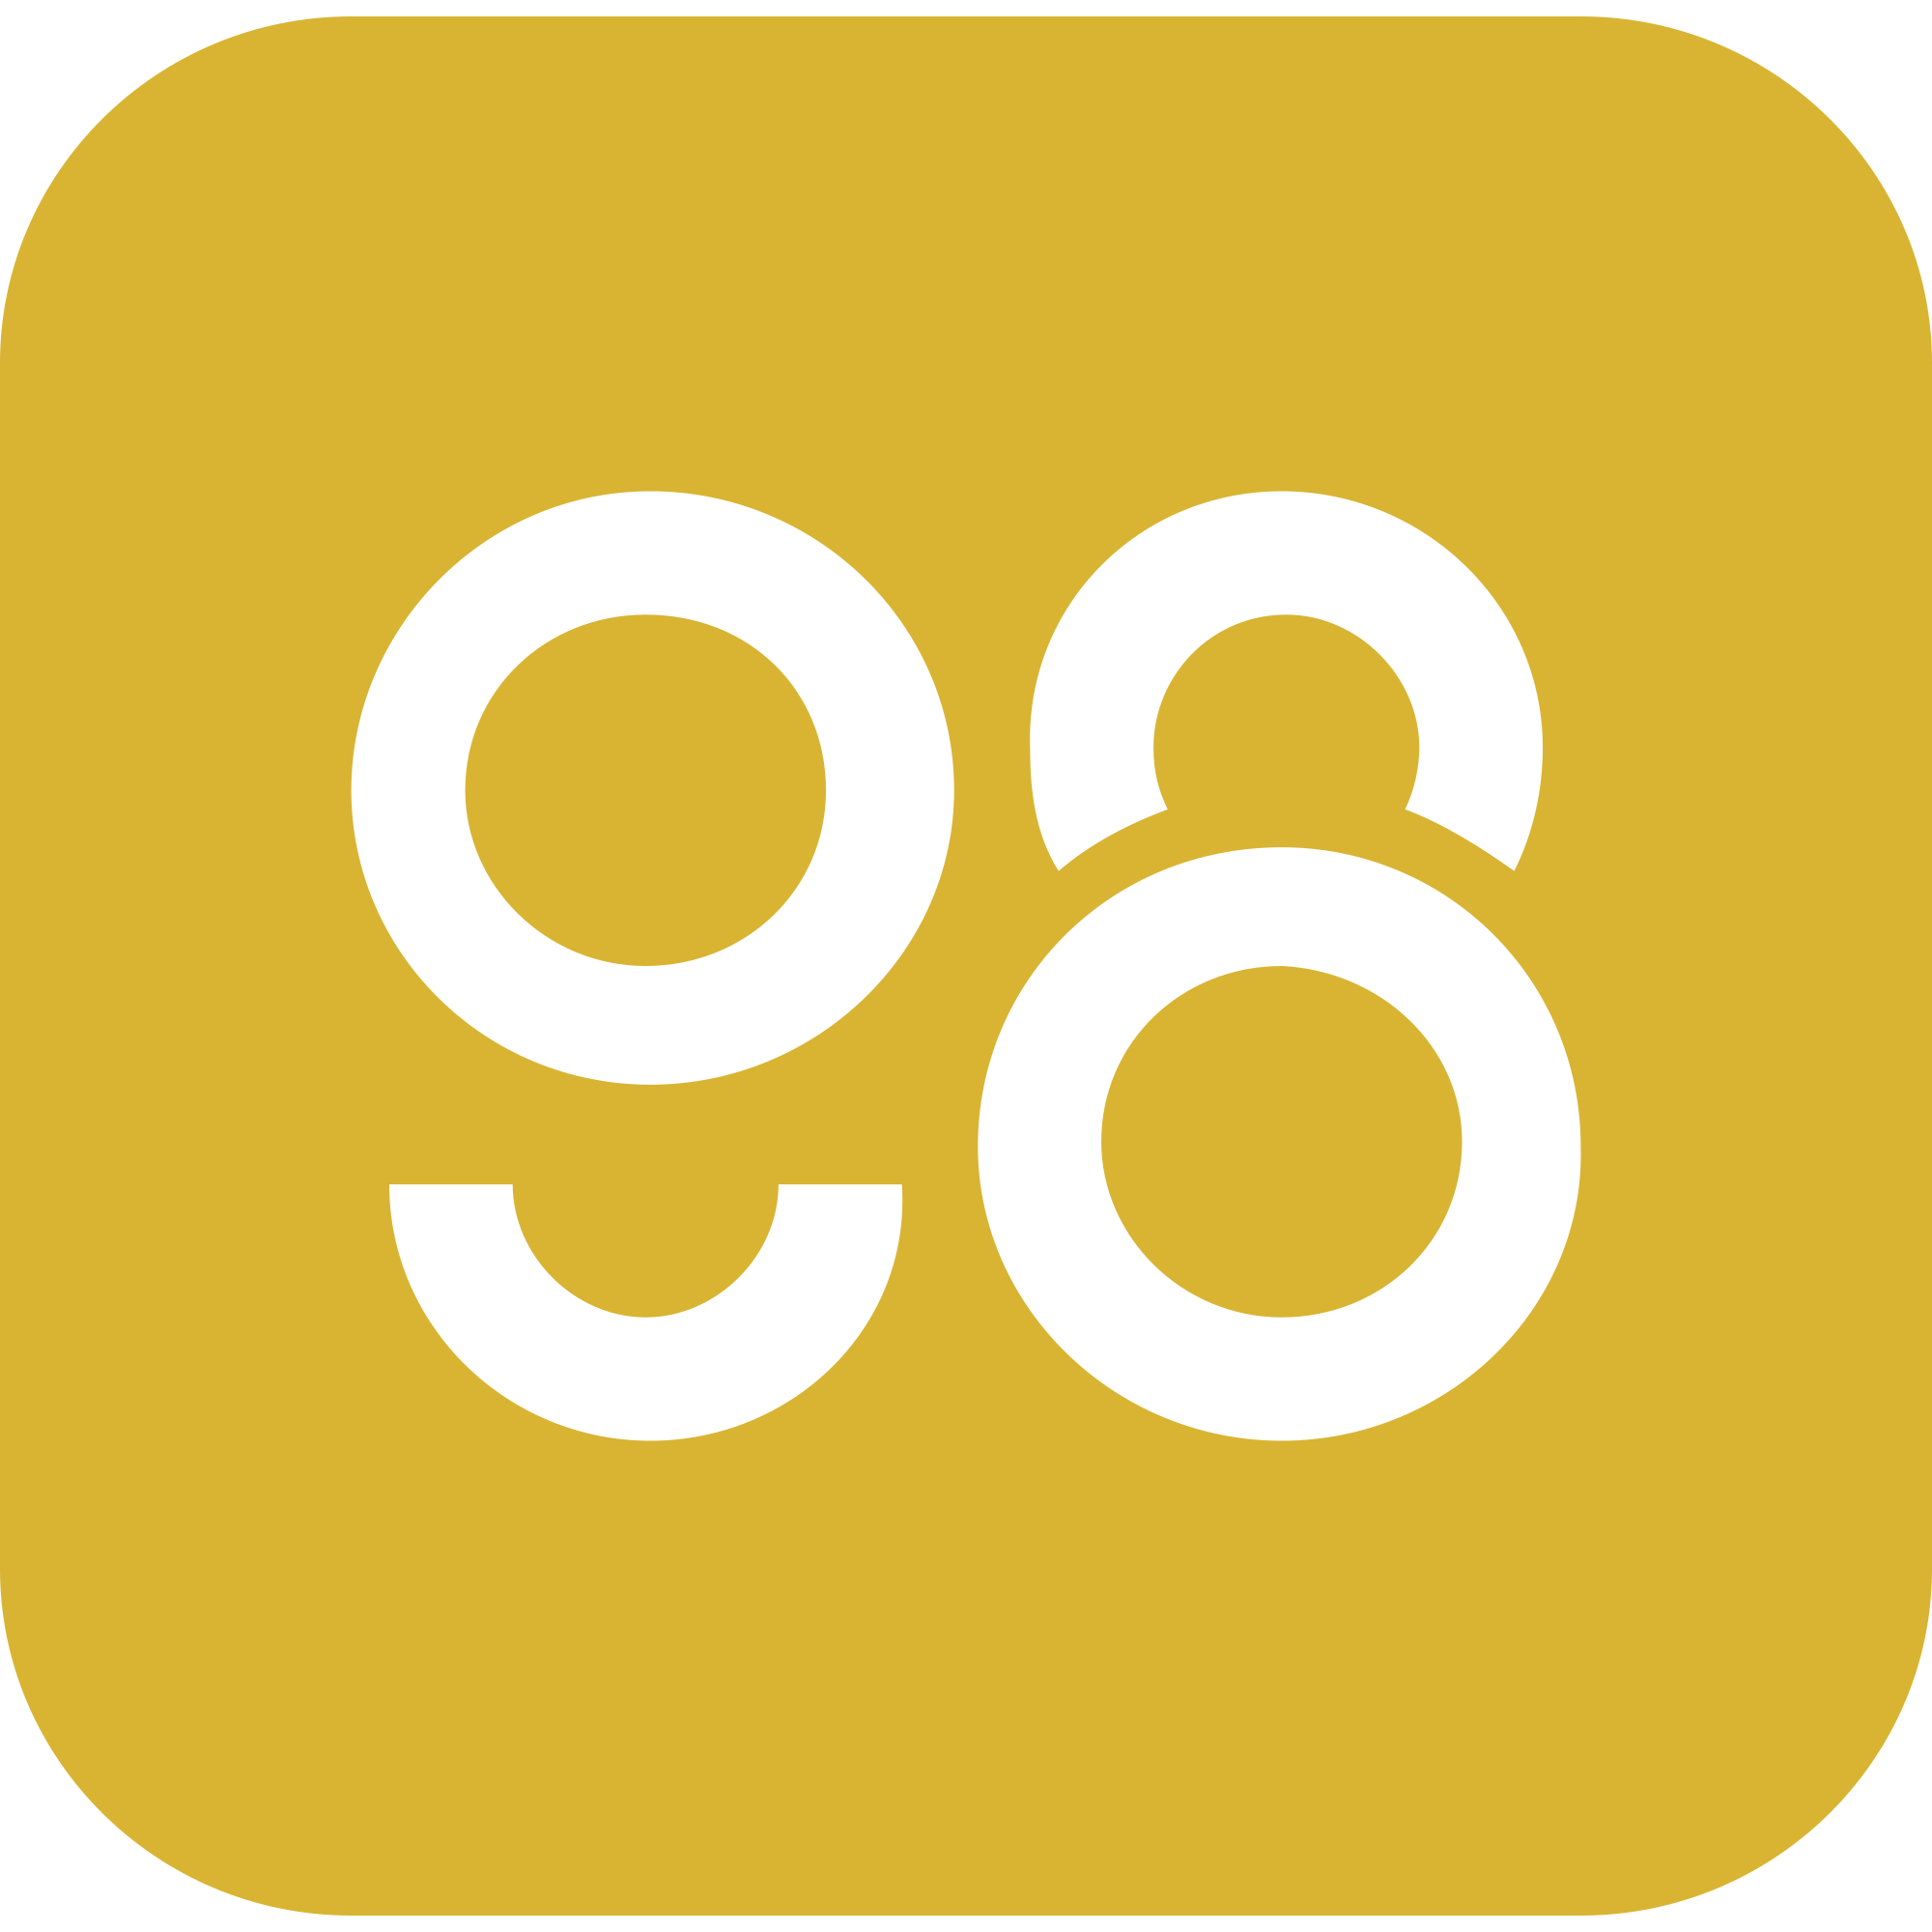 coin98-c98-logo